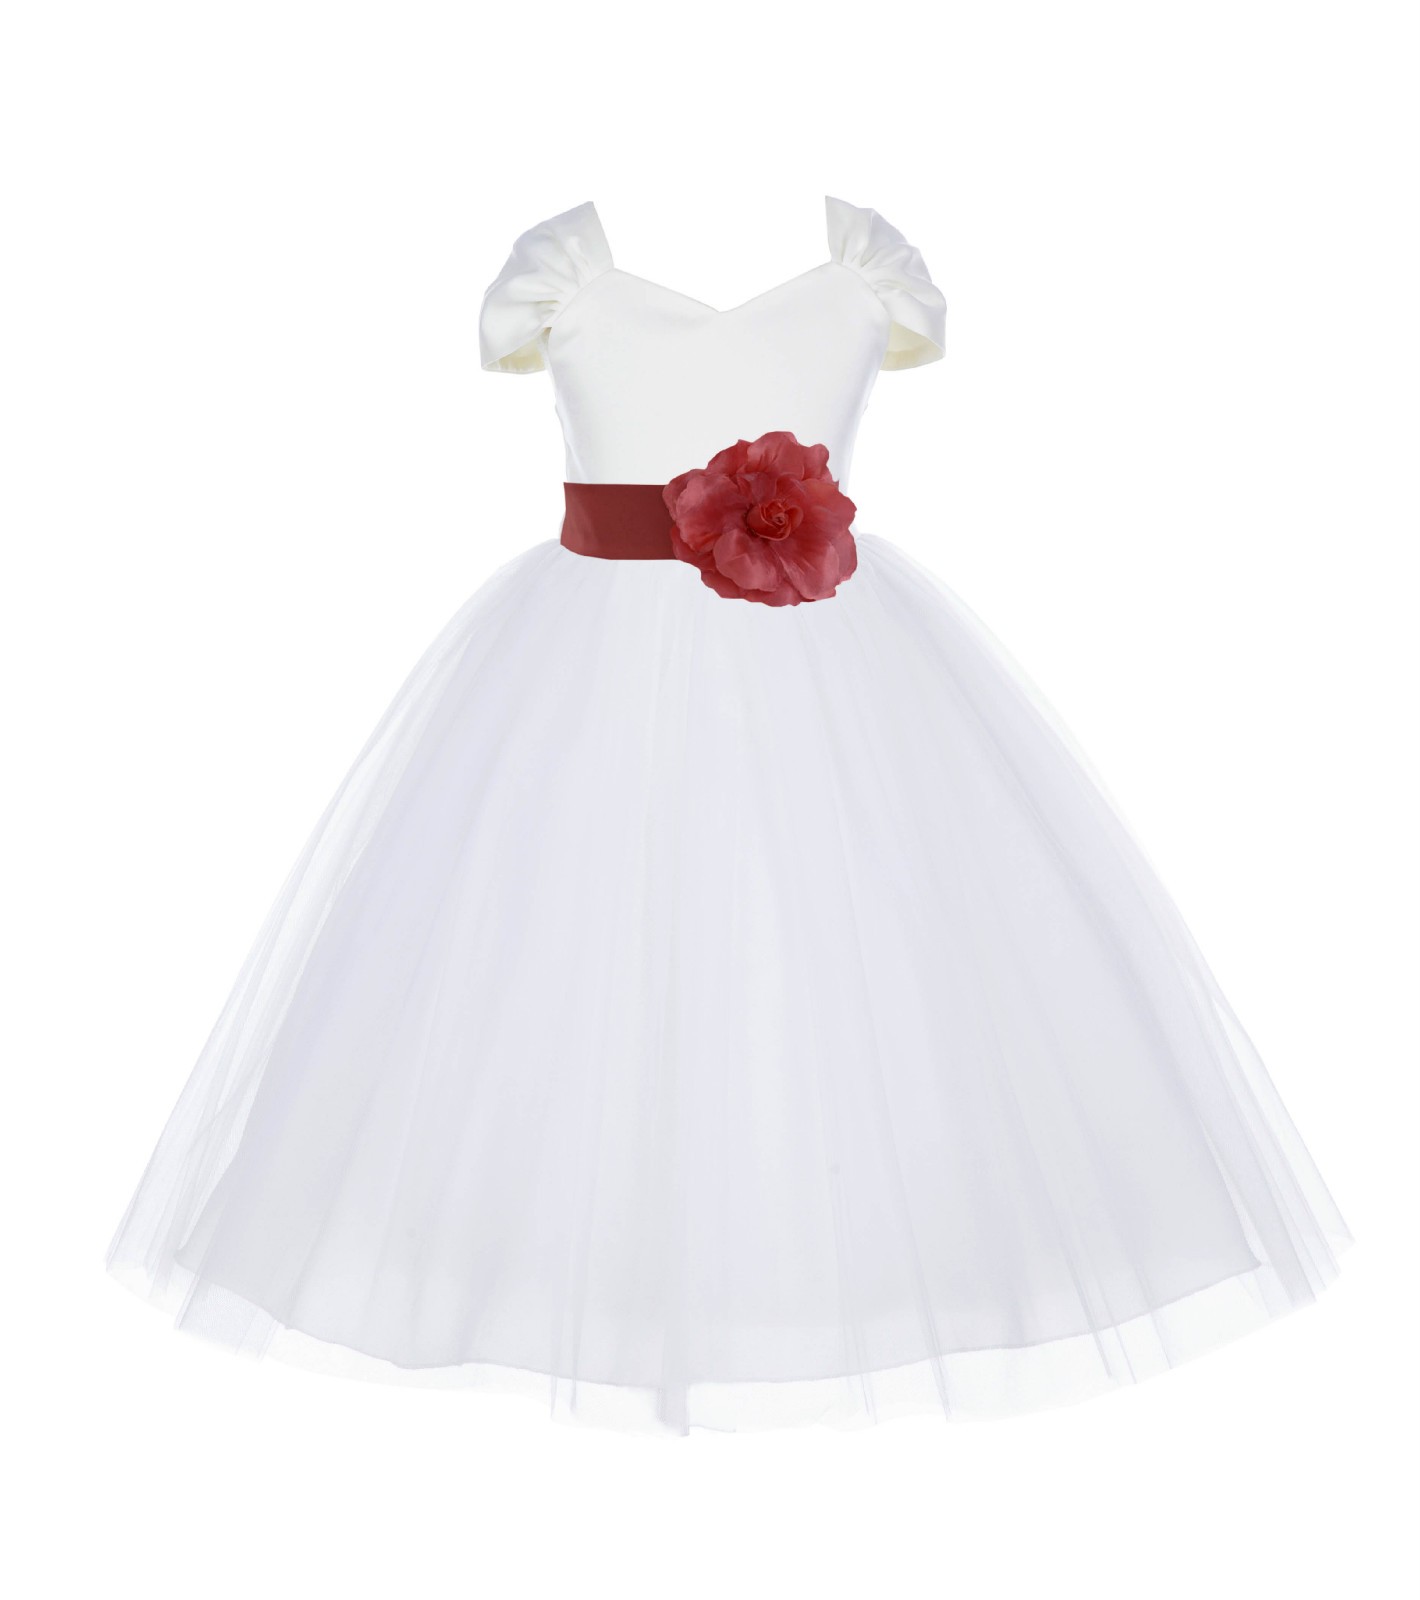 Ivory/Guava V-shaped Neckline Short Sleeves Tulle Flower Girl Dress 154S